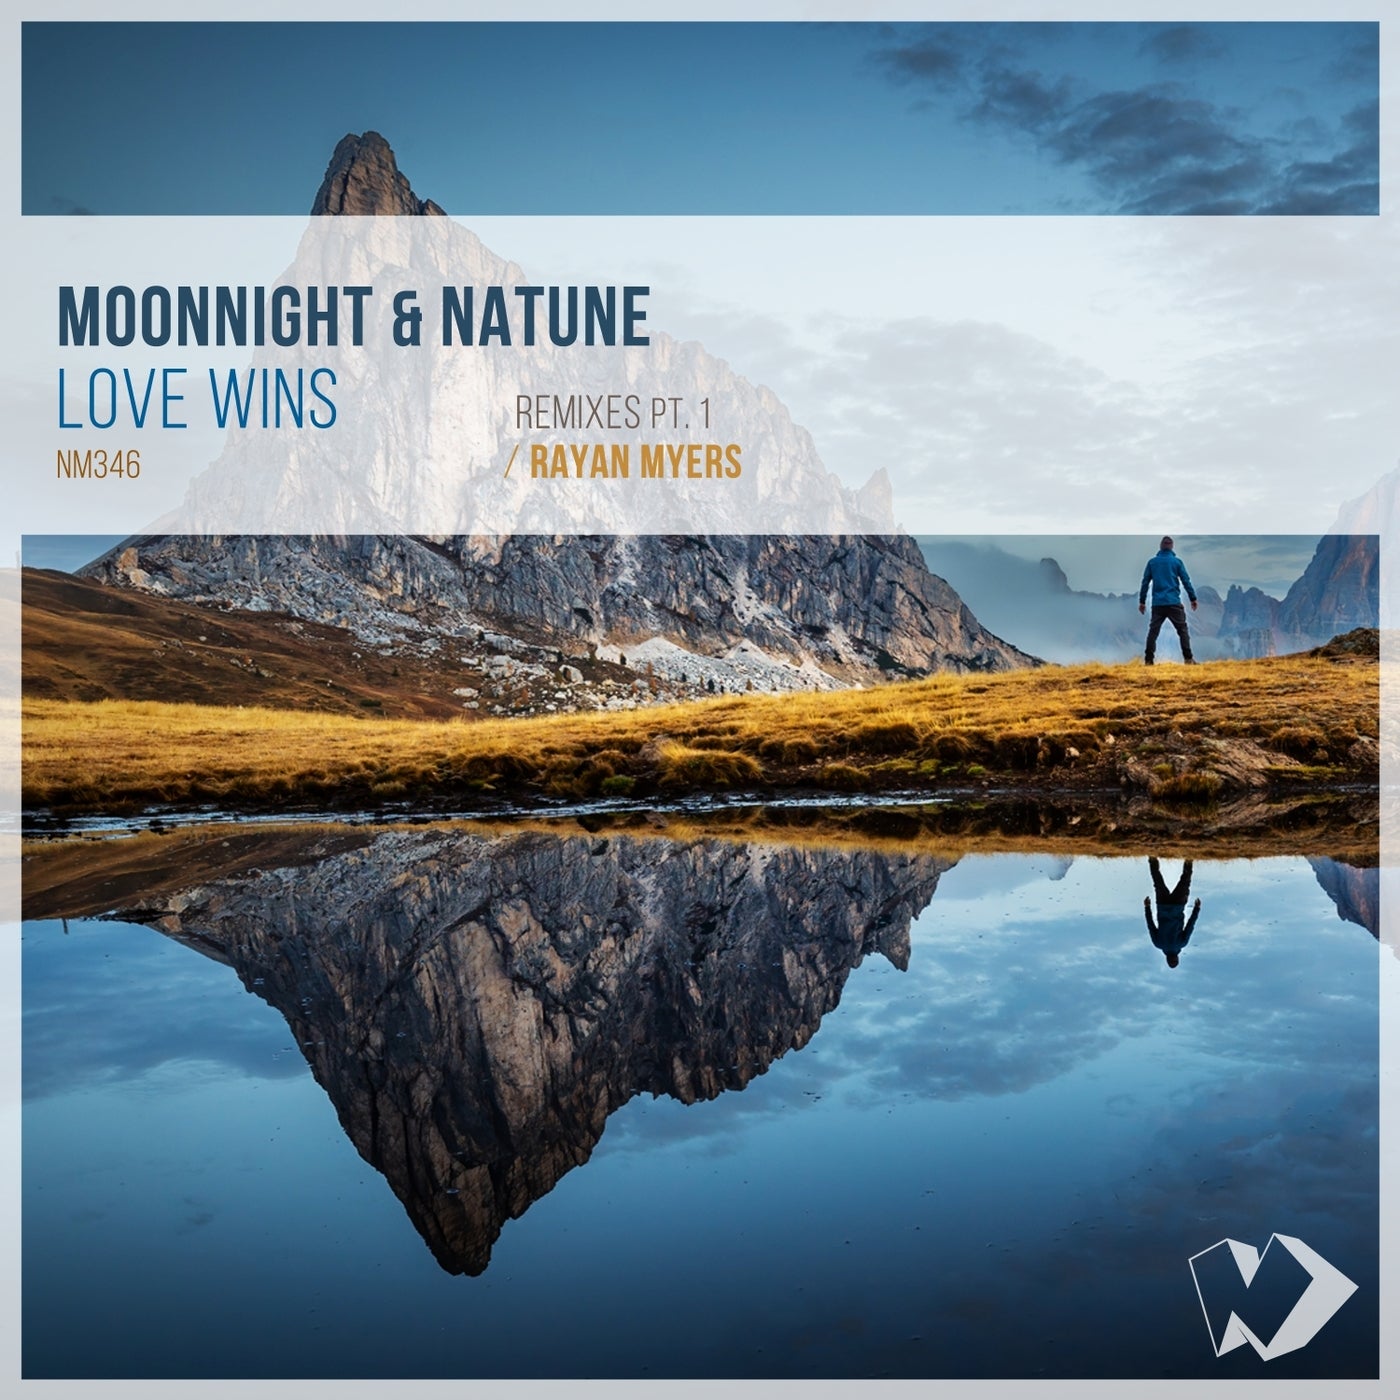 Moonnight, Natune - Love Wins (Rayan Myers Remix)